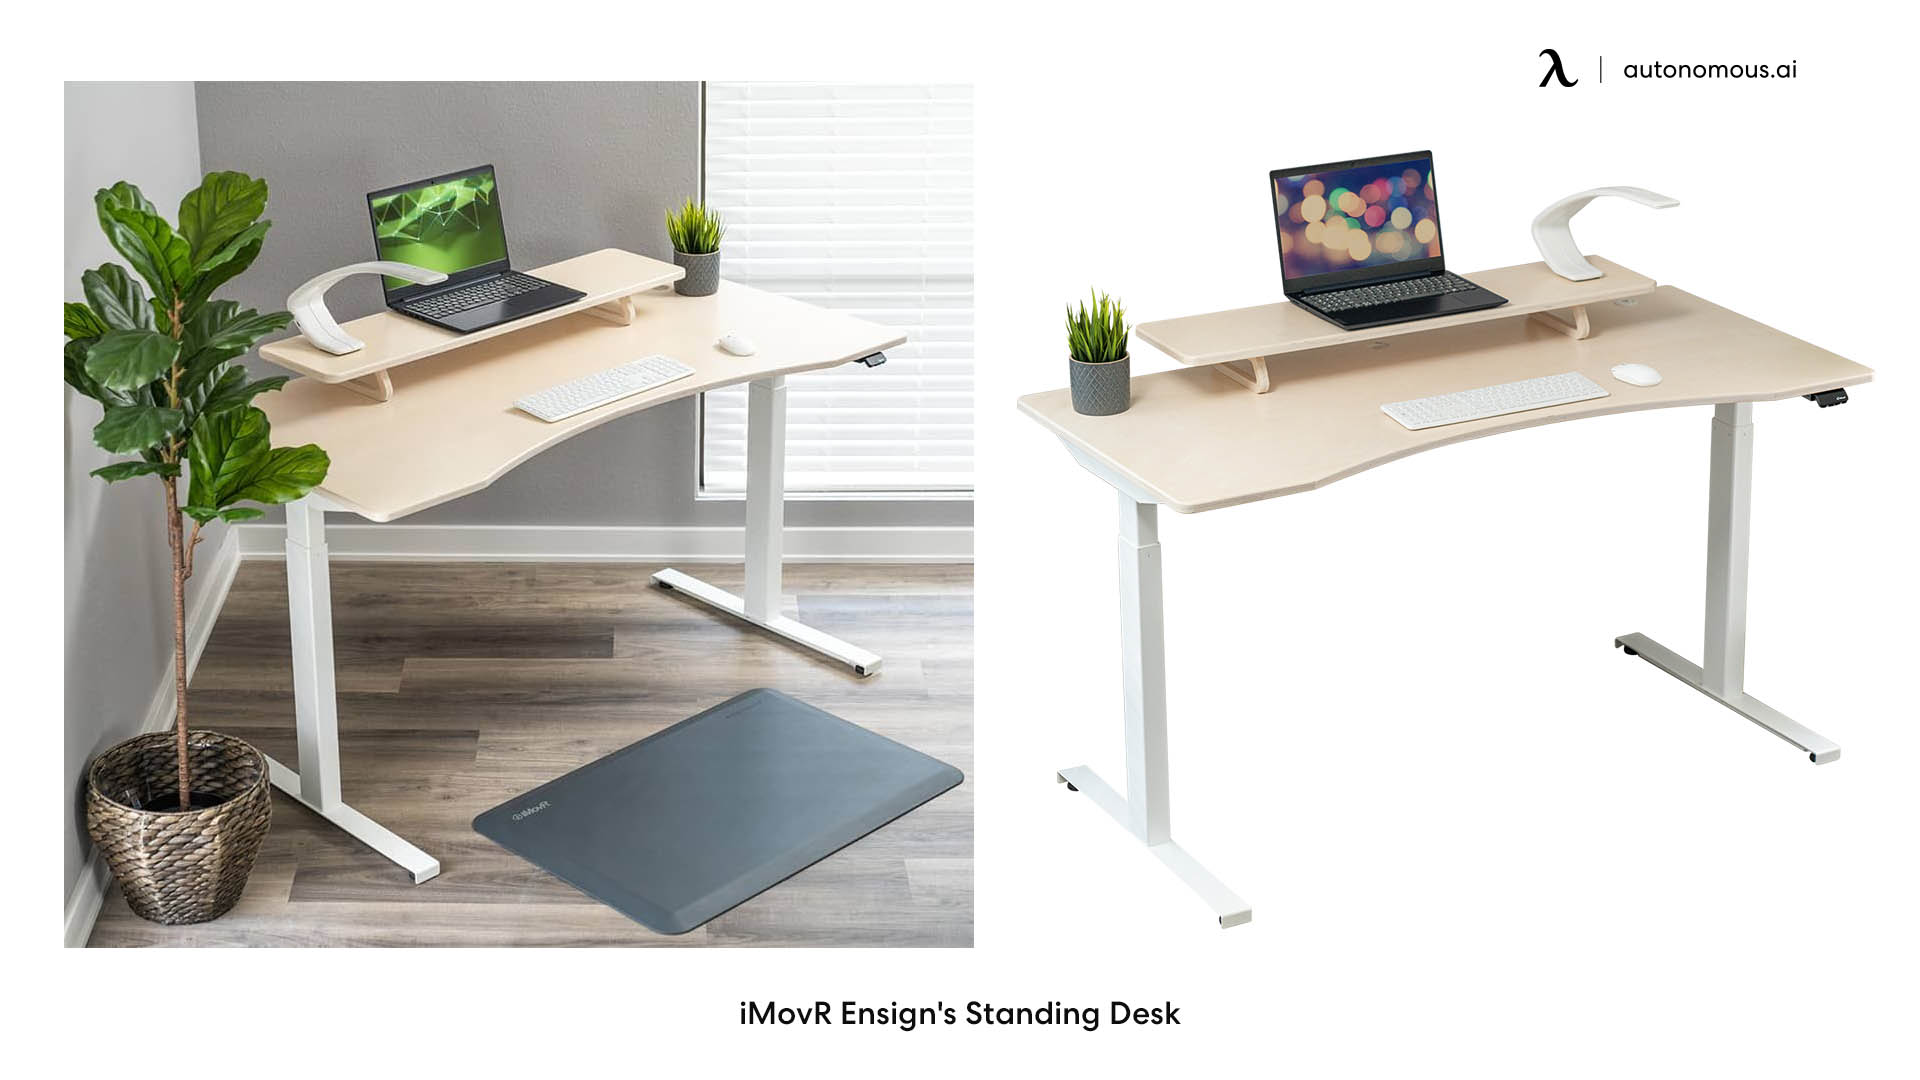 iMovR Ensign's Standing Desk